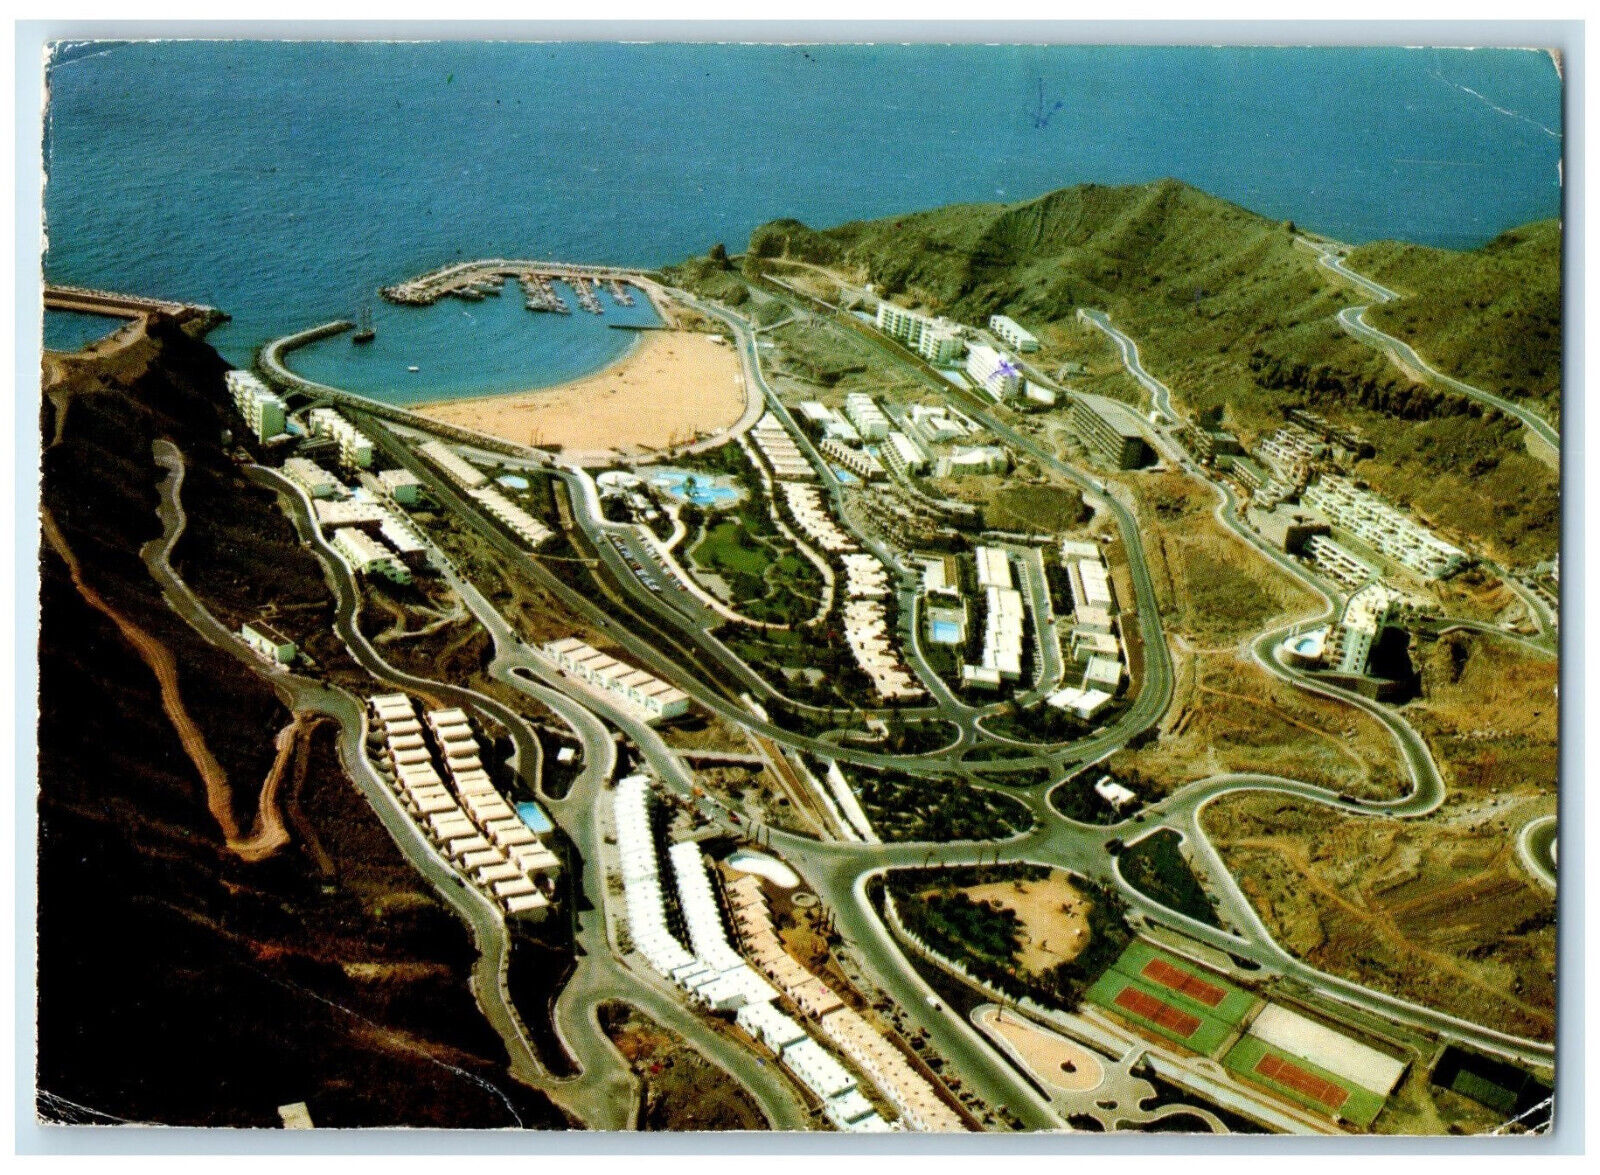 1974 General Aerial View Islas Canarias Puerto Rico (Gran Canaria) Postcard